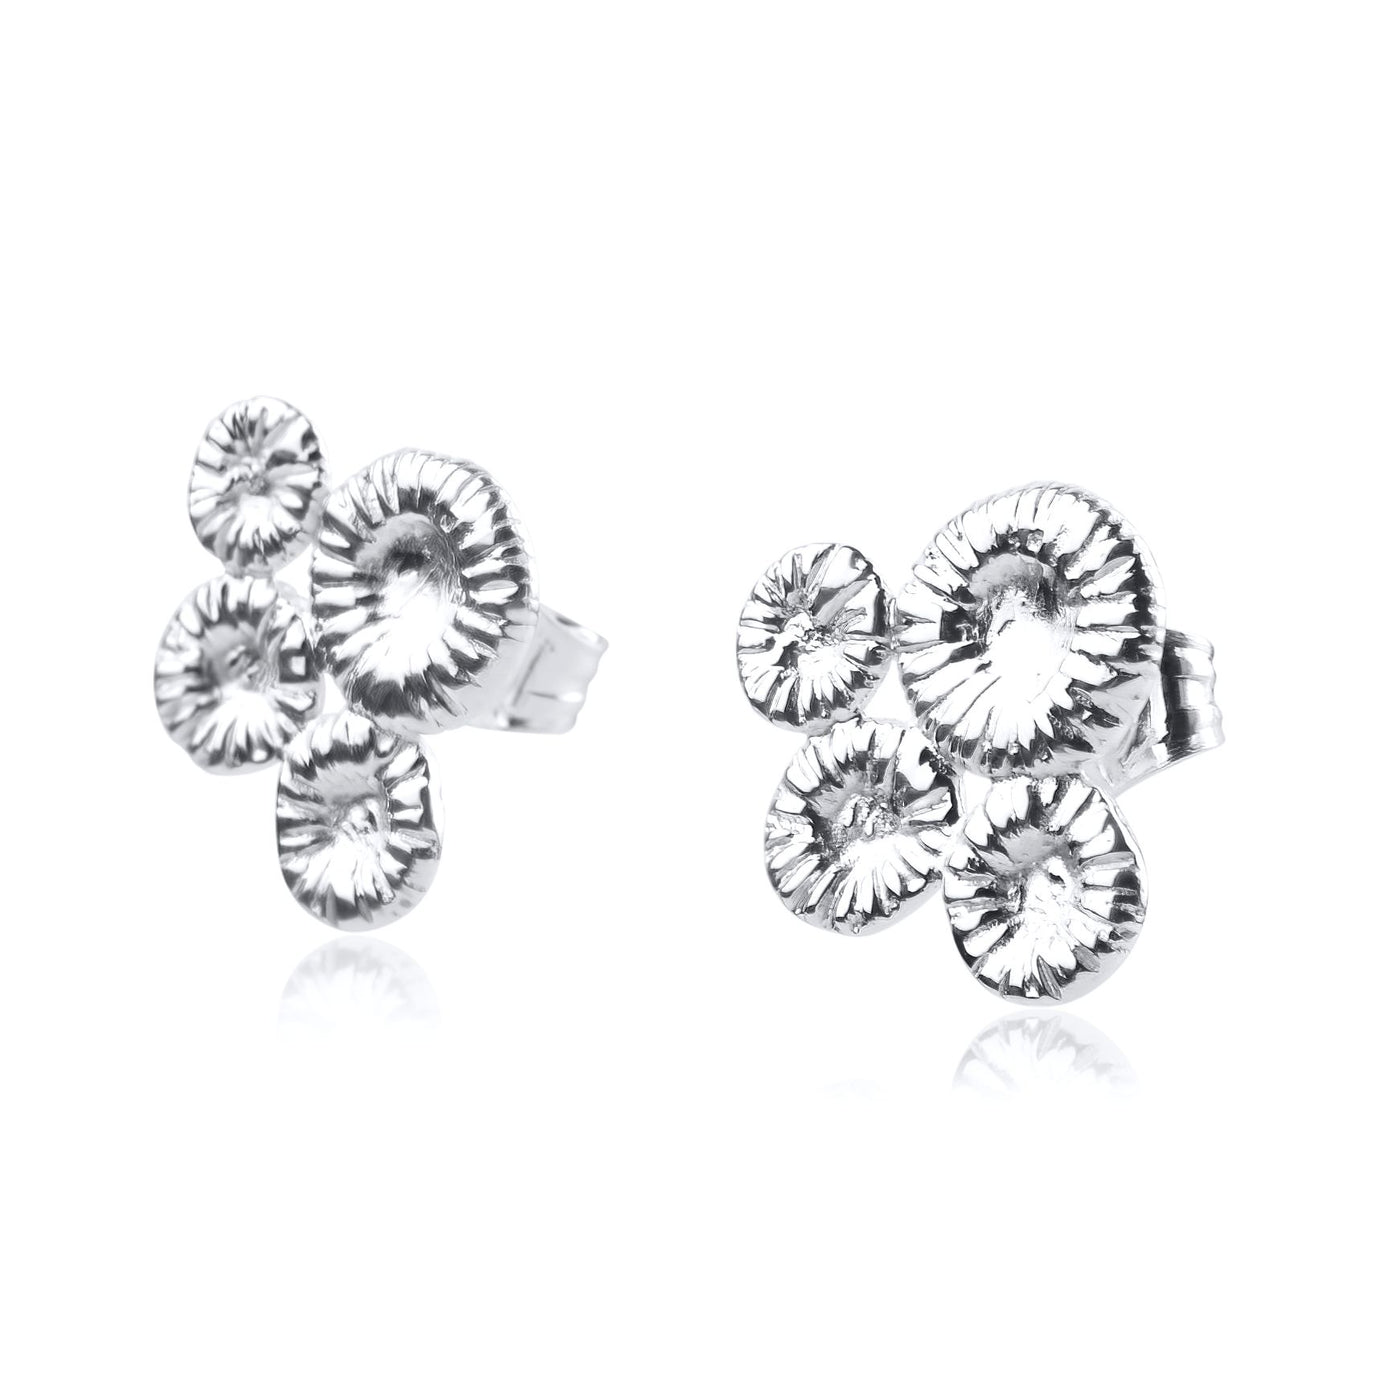 Button coral "Fårö" earring